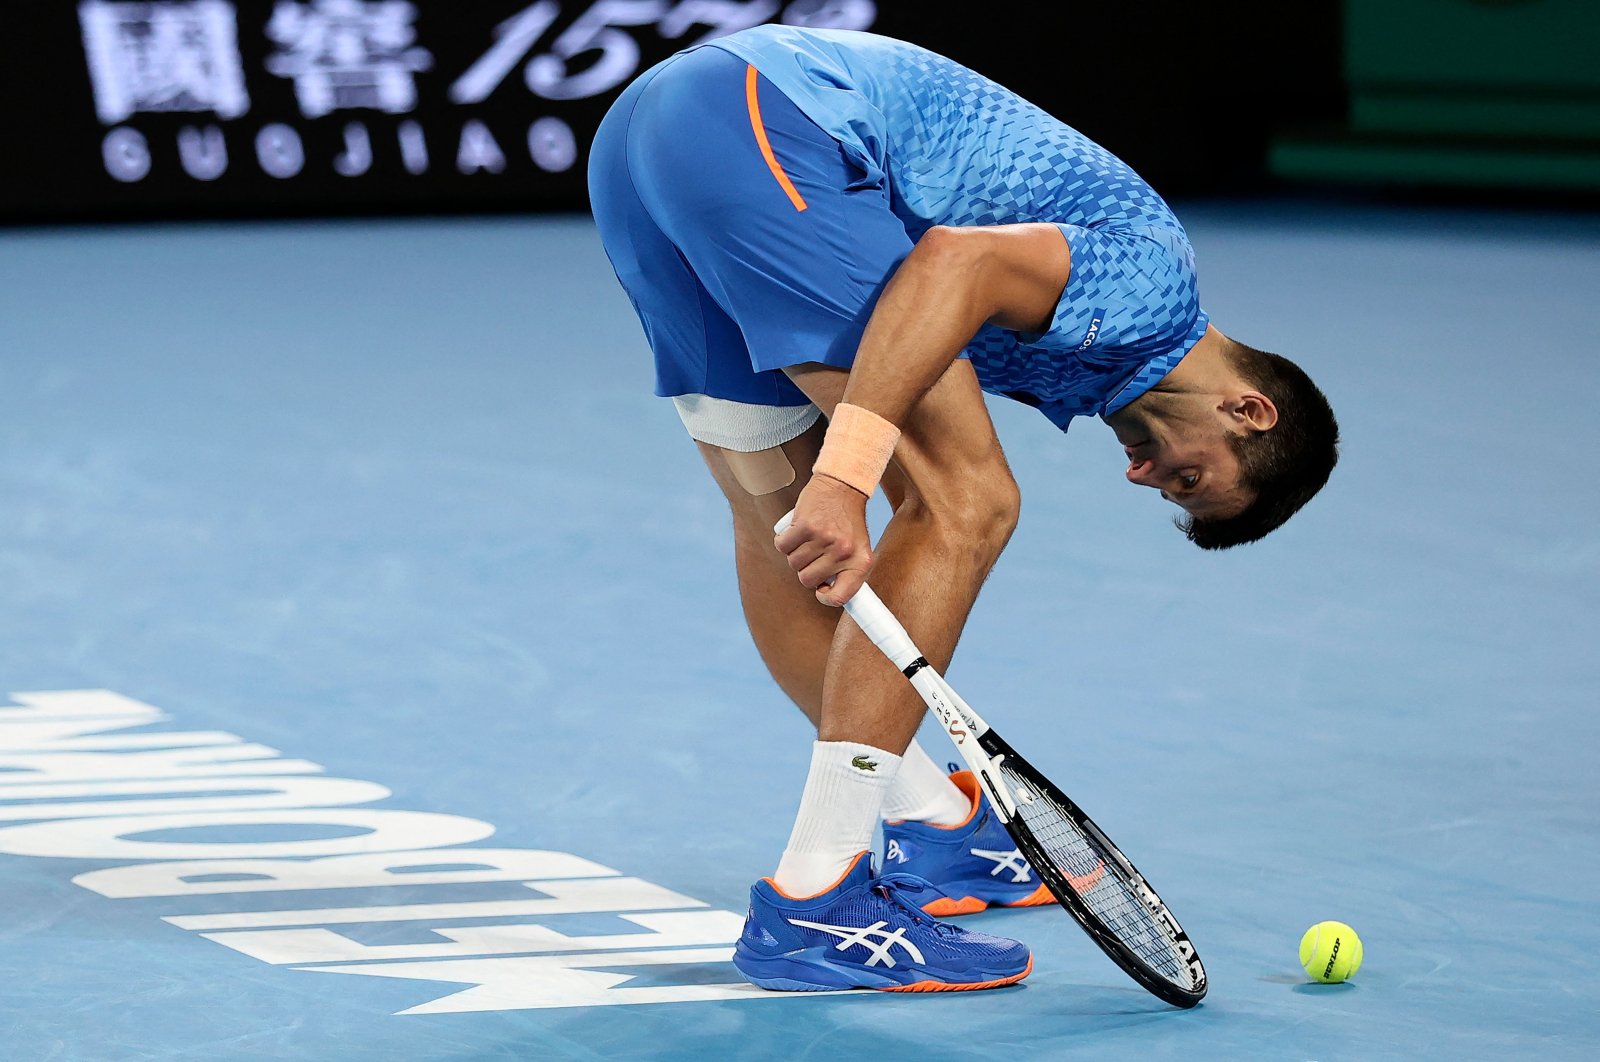 Djokovic menang meski mengalami cedera saat Murray mundur